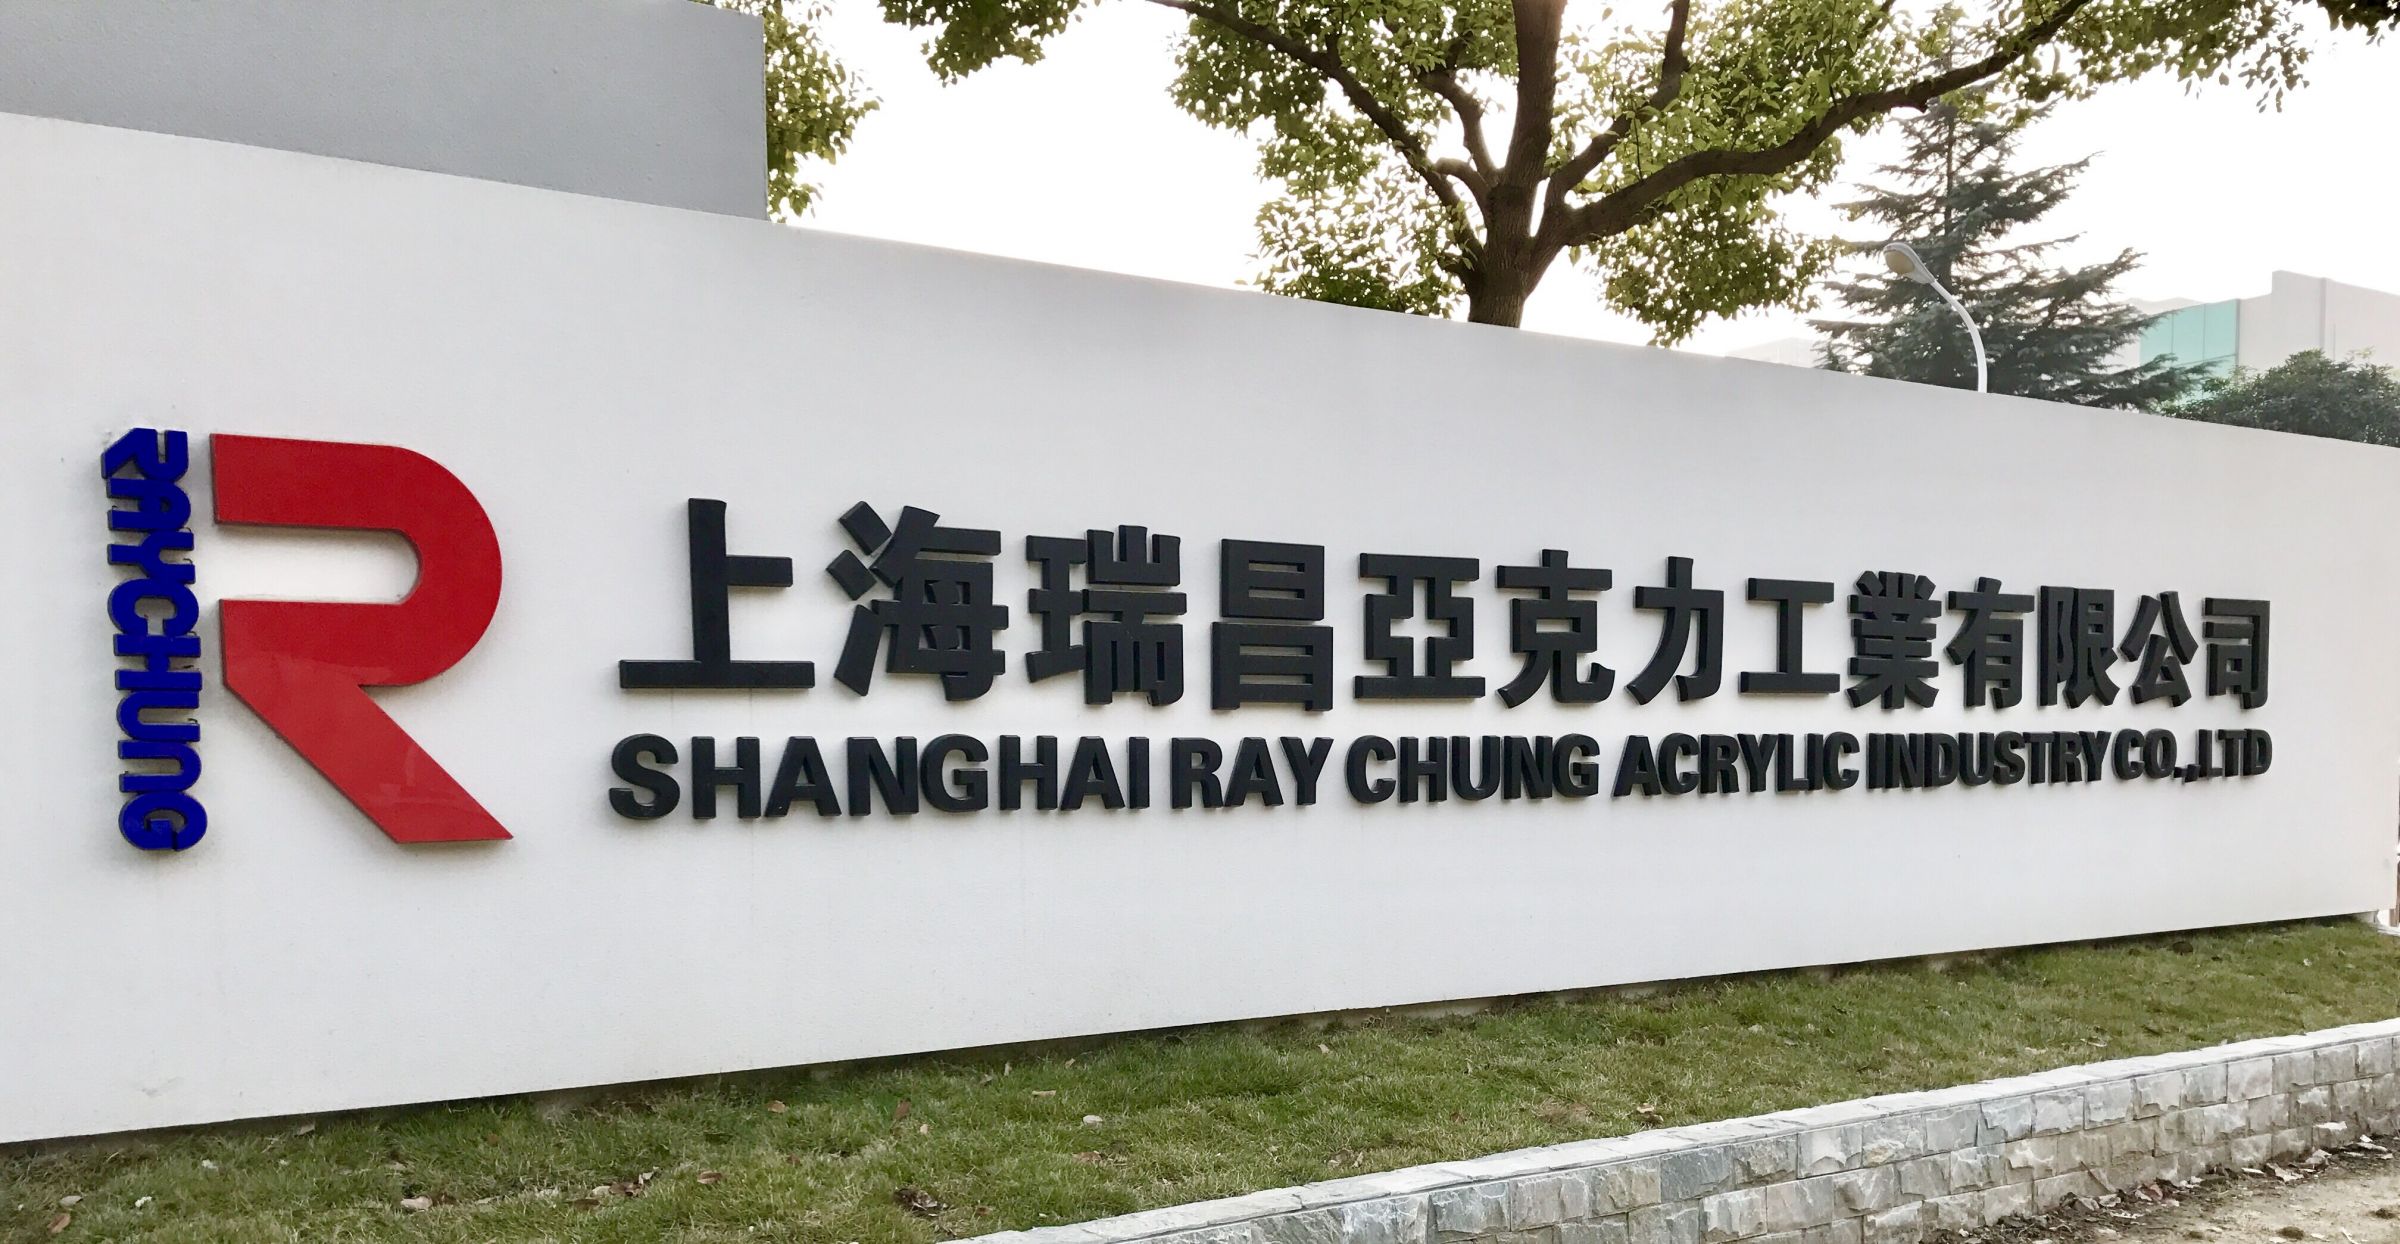 Señal de fachada de acrílico de Shanghai Ray Chung